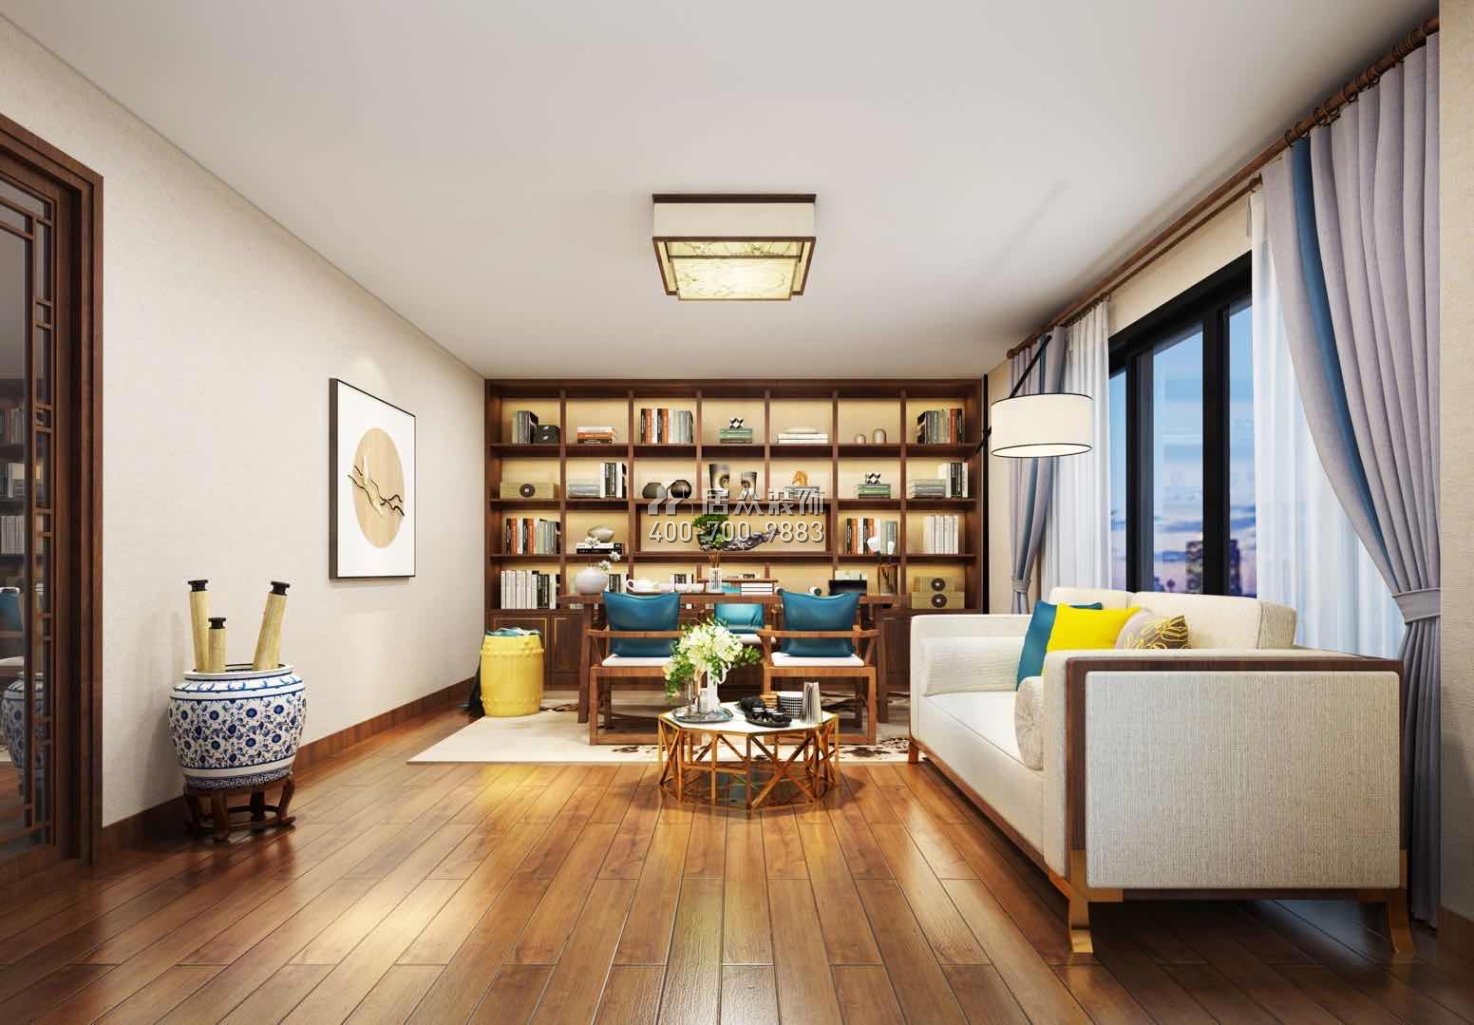 万科棠樾500平方米中式风格别墅户型书房装修效果图